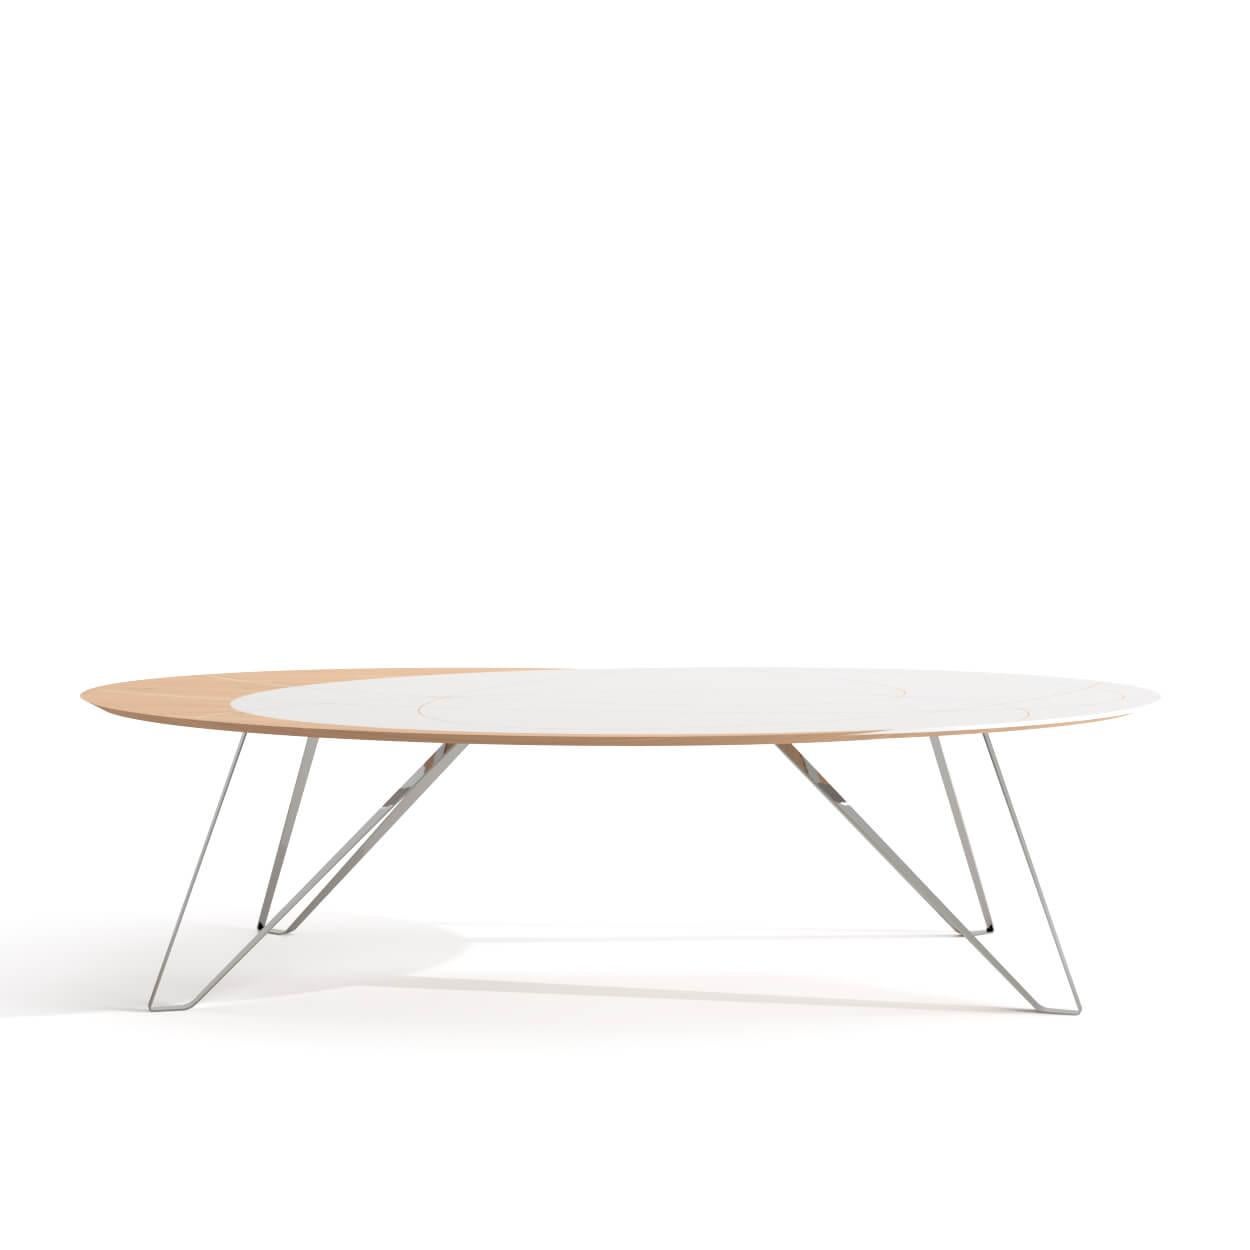 La collezione Orbit è perfetta per case dal design rilassato, piene di luce e personalità. Il tavolo da pranzo ha una forma ovale, con legno di Oak e legno laccato bianco interconnessi sul piano, che lo rendono il punto focale della stanza. I piedi